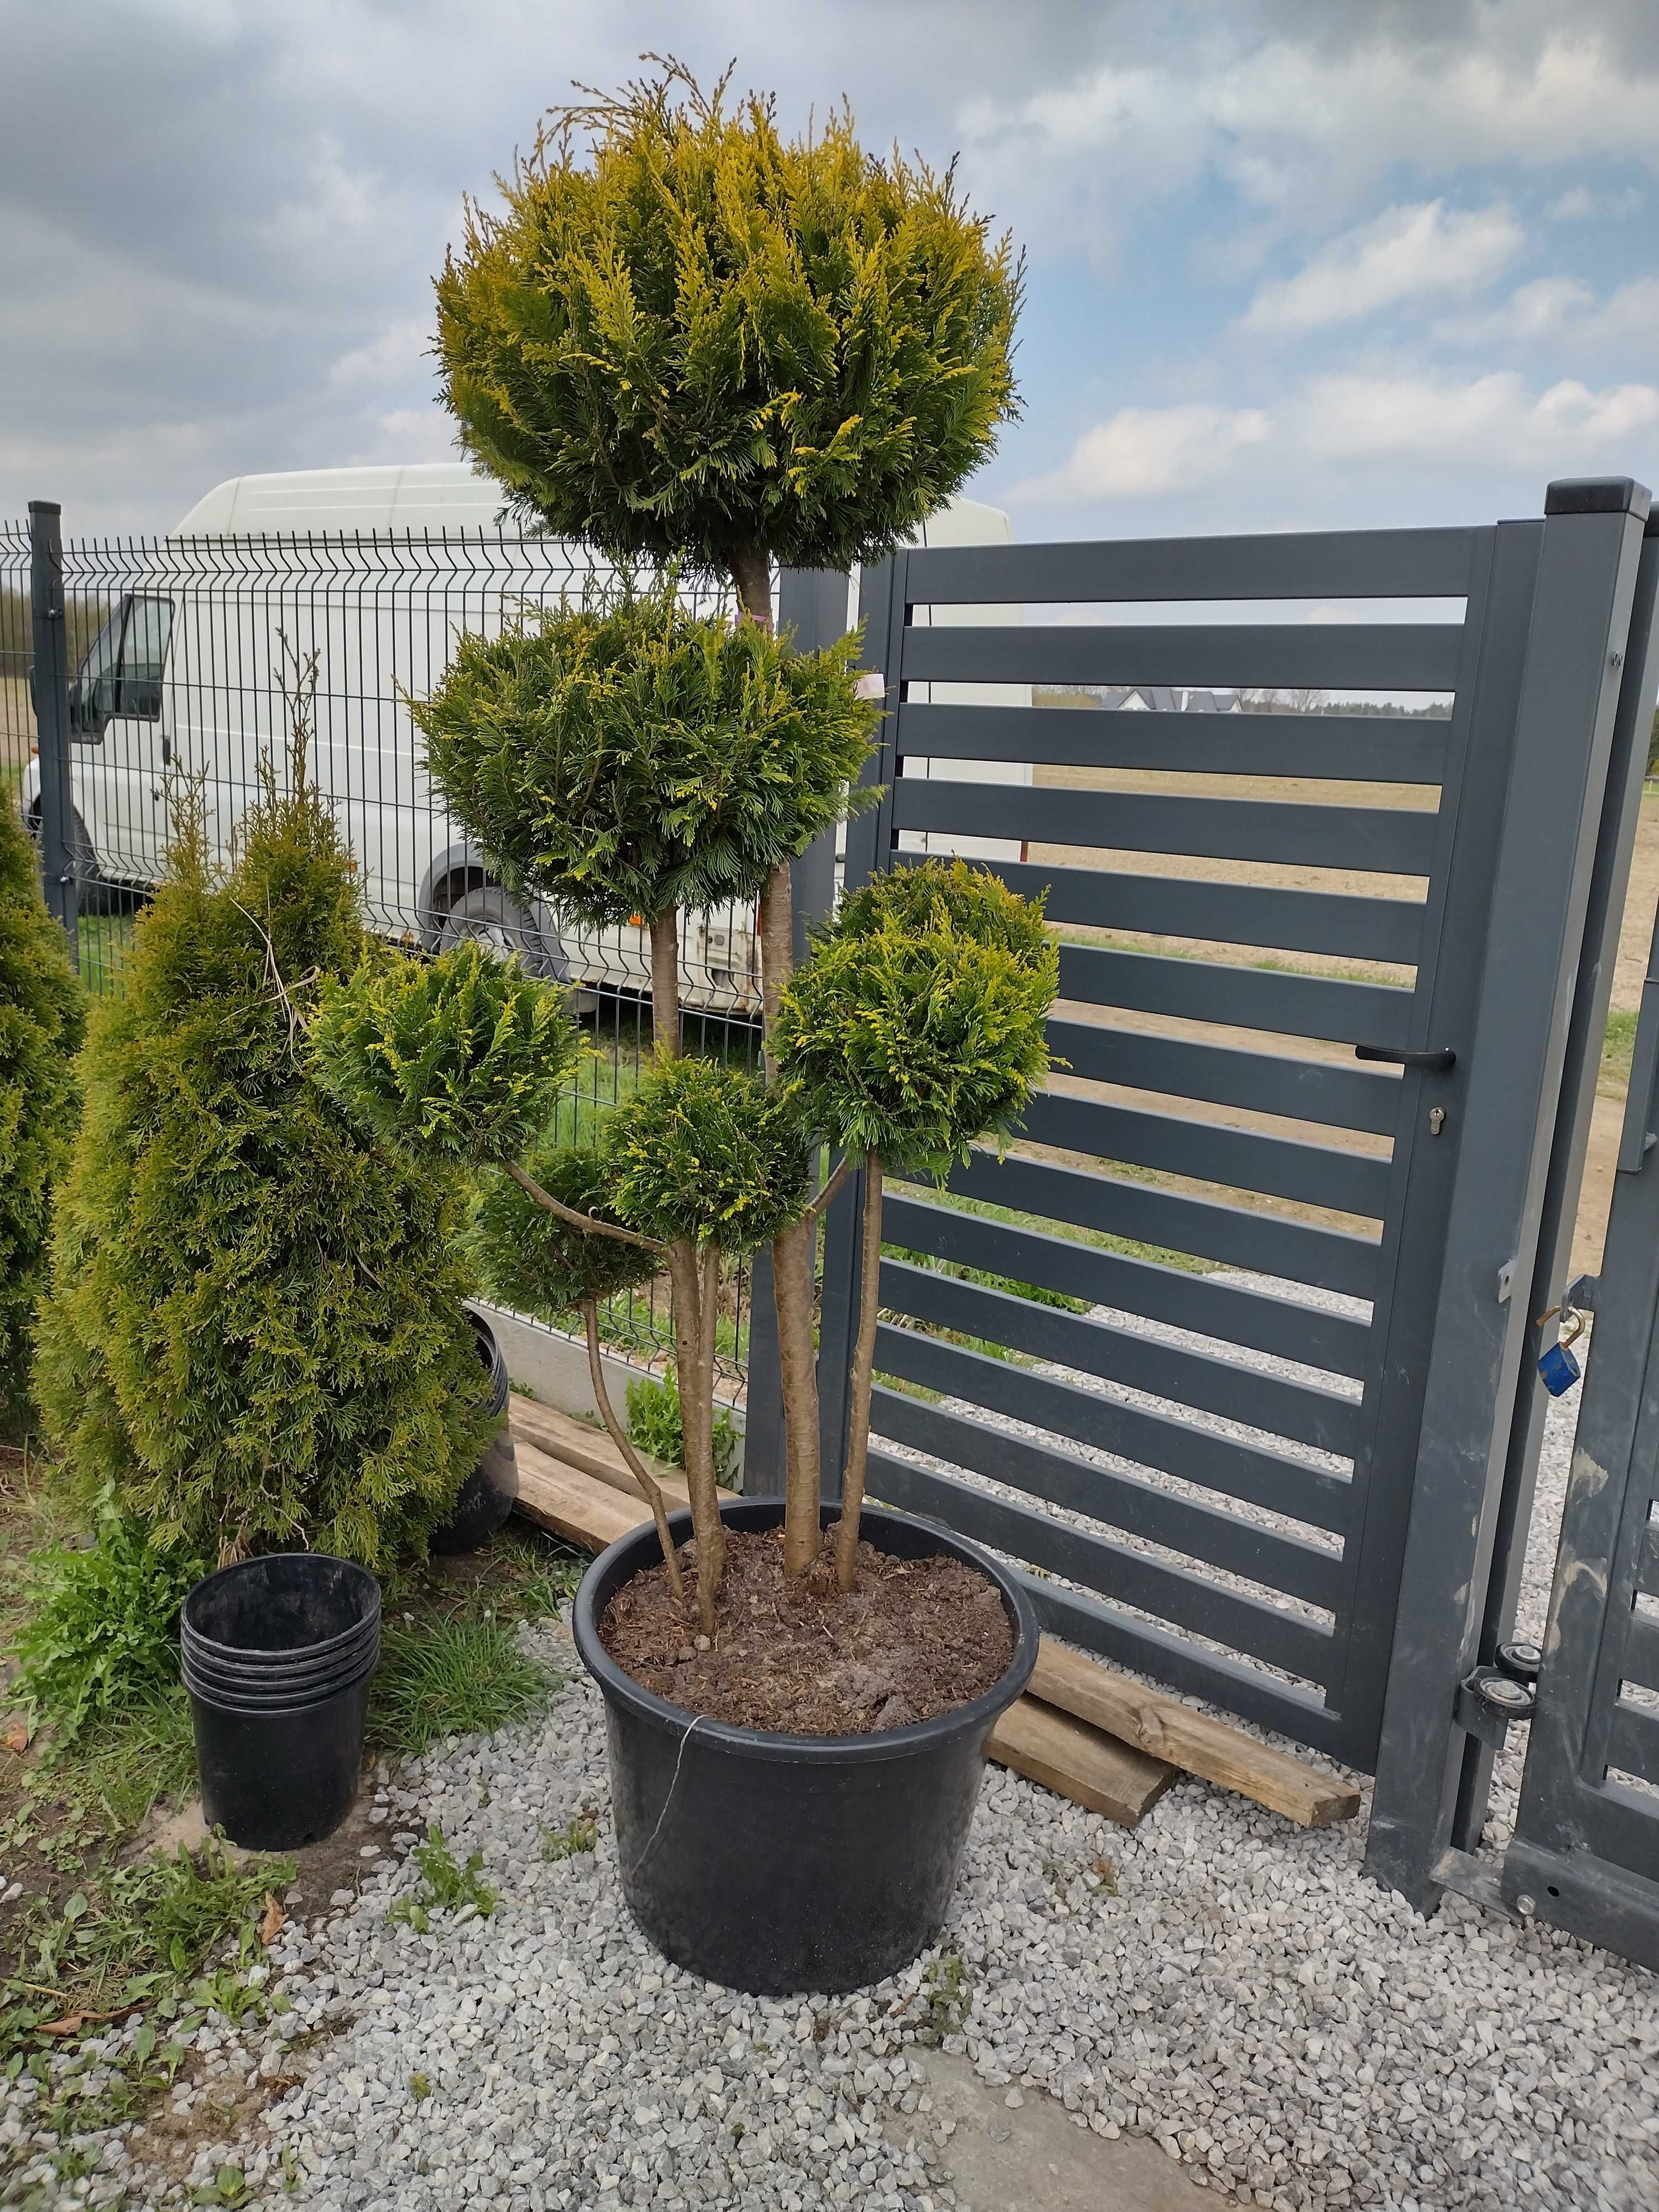 Cyprys bonsai 160-300cm (katalpa,klon,laurowiśnia,szmaragd,brabant)